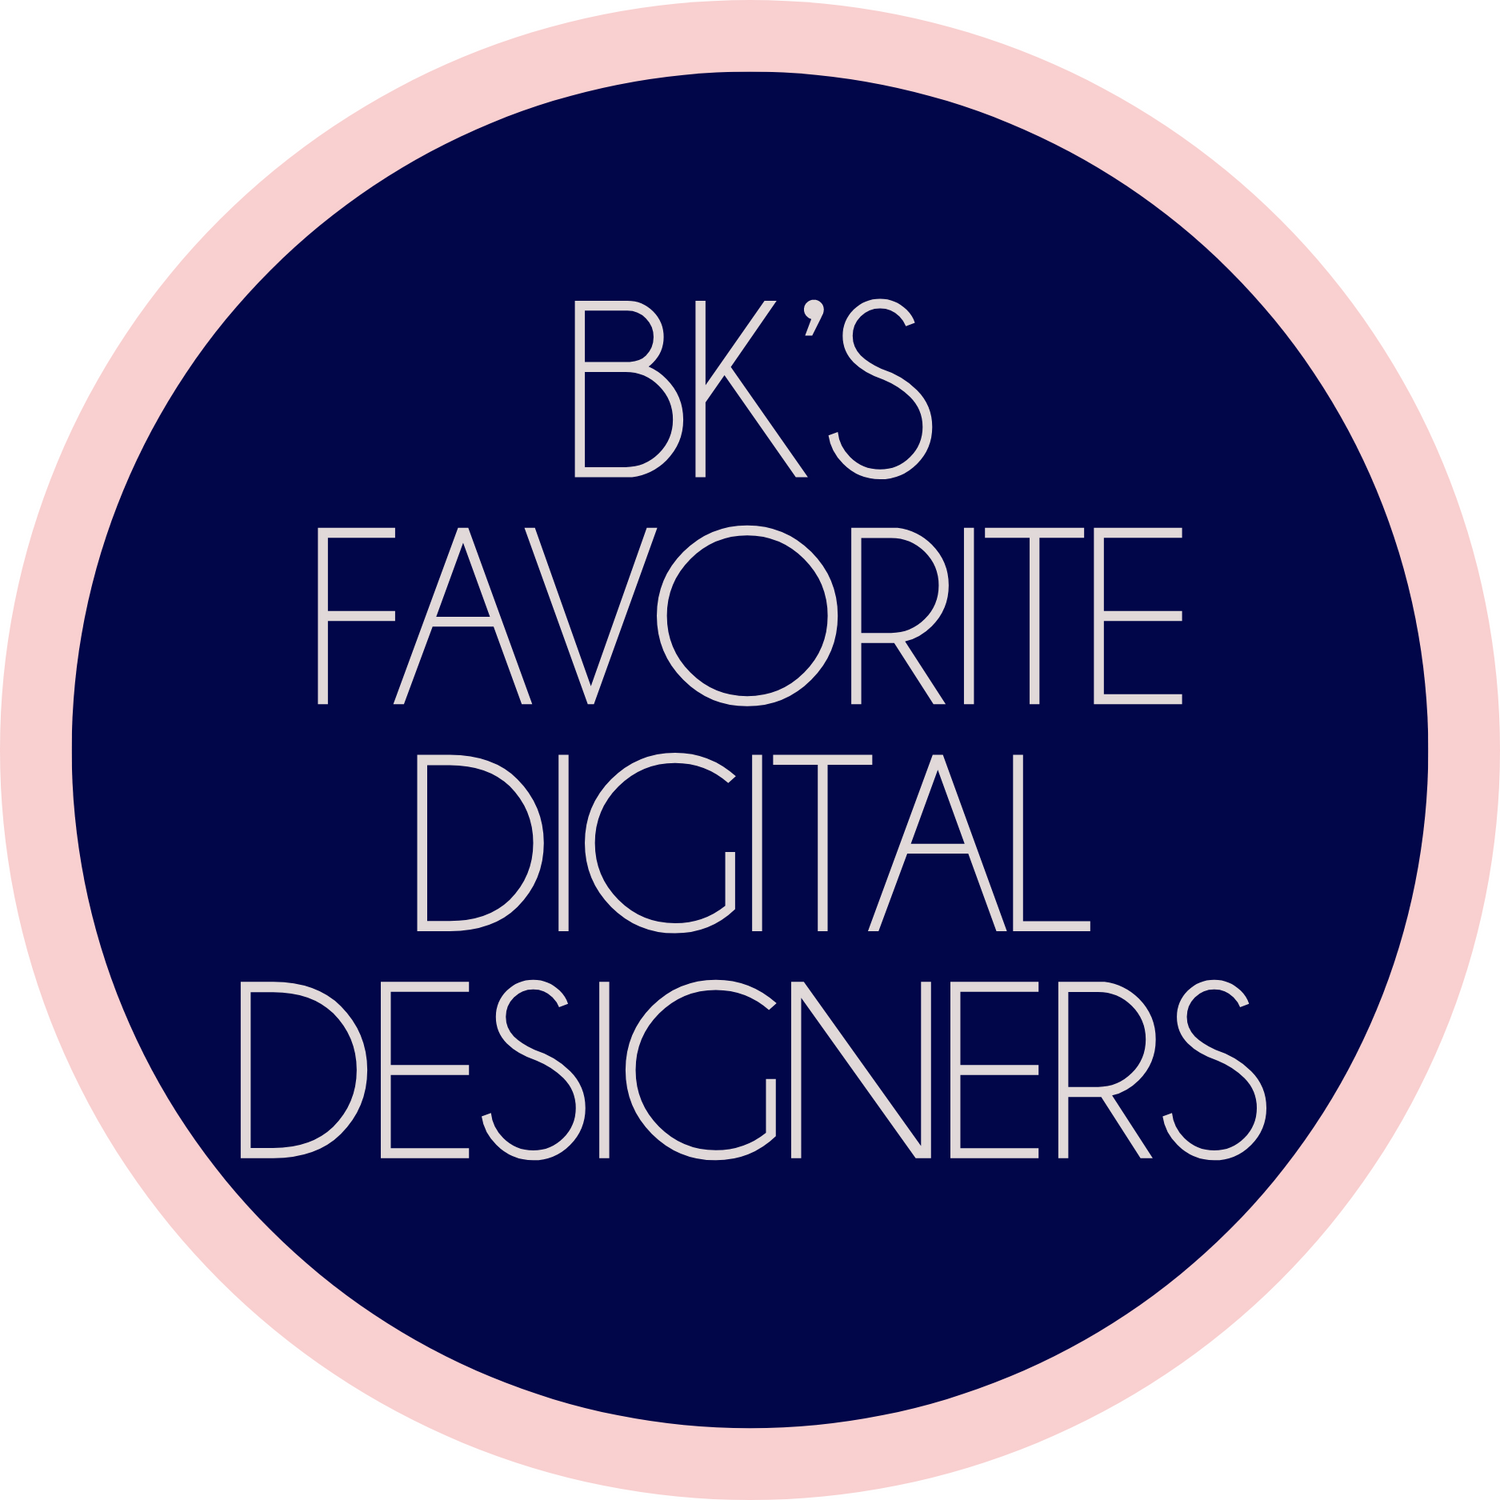 BK's Favorite Digital Designers